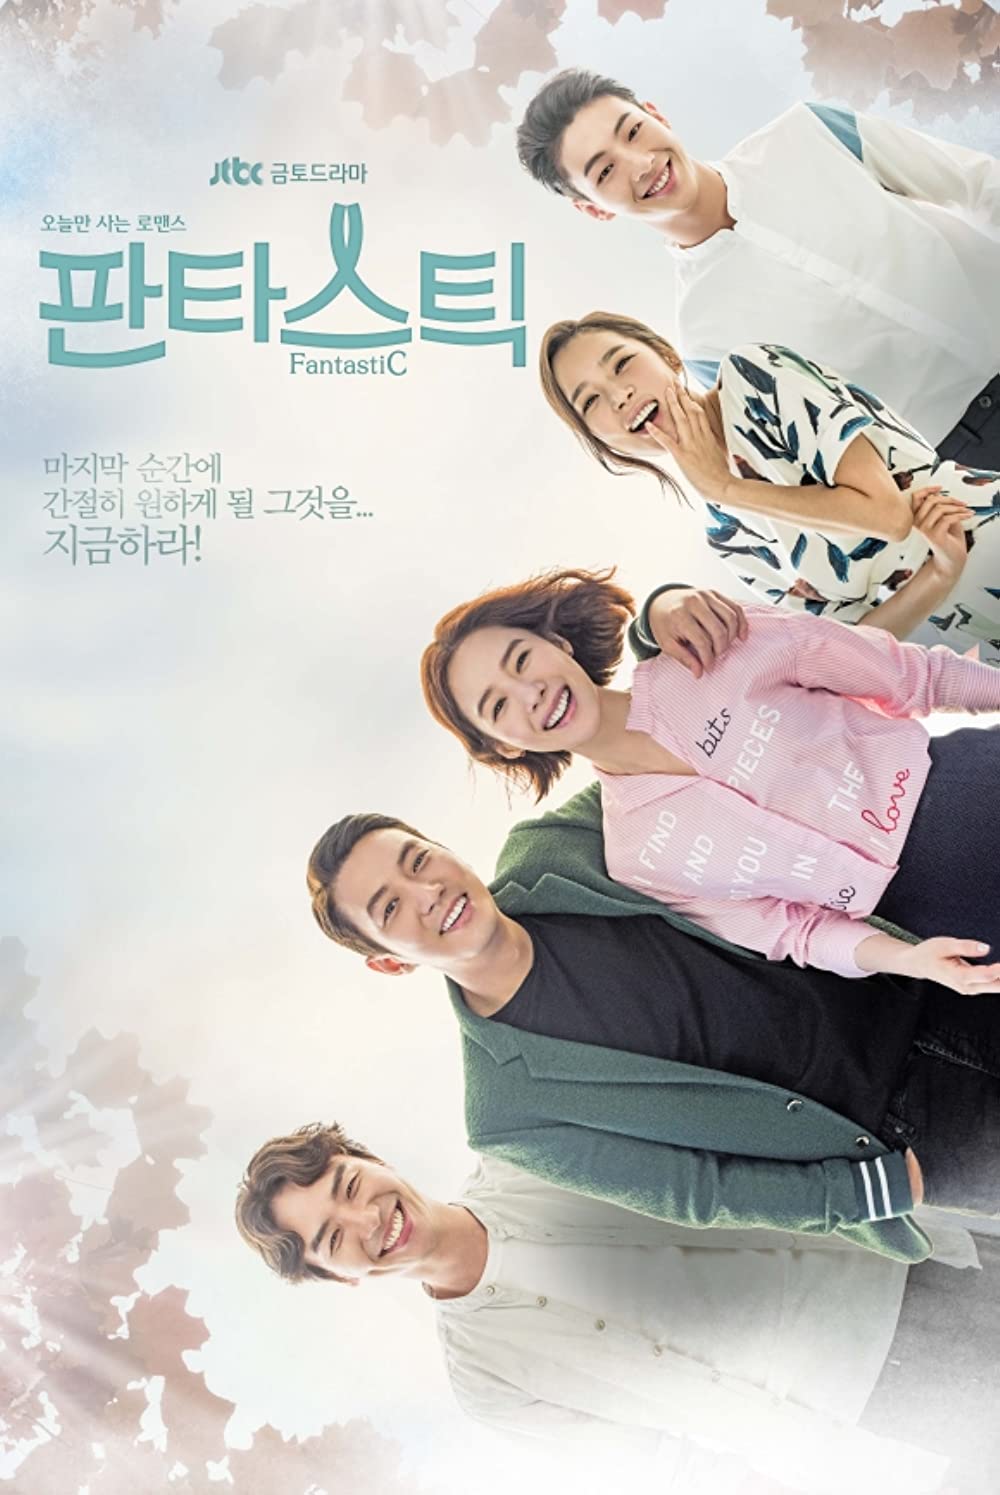 7 Drama Korea kisahkan perjuangan survivor kanker, mengaduk emosi jiwa